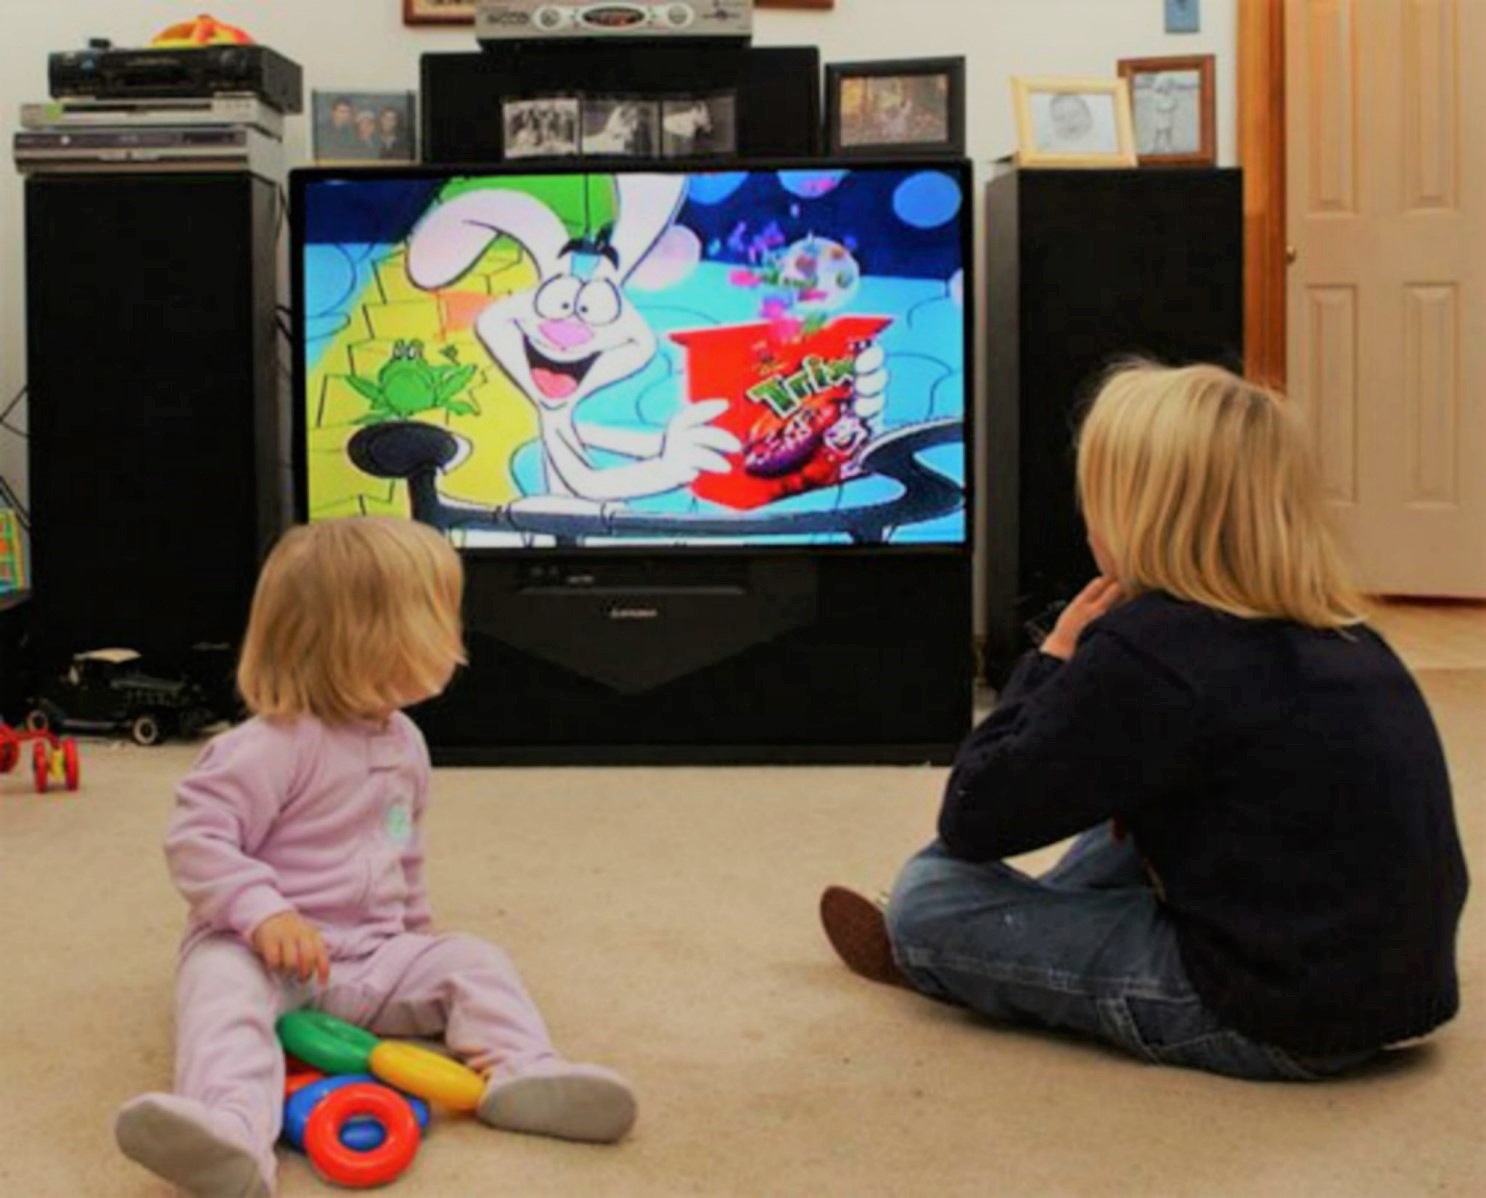 عوارض و تاثیر خوب و بد تلویزیون روی کودکان+نظرات مثبت و منفی پزشکان در این زمینه